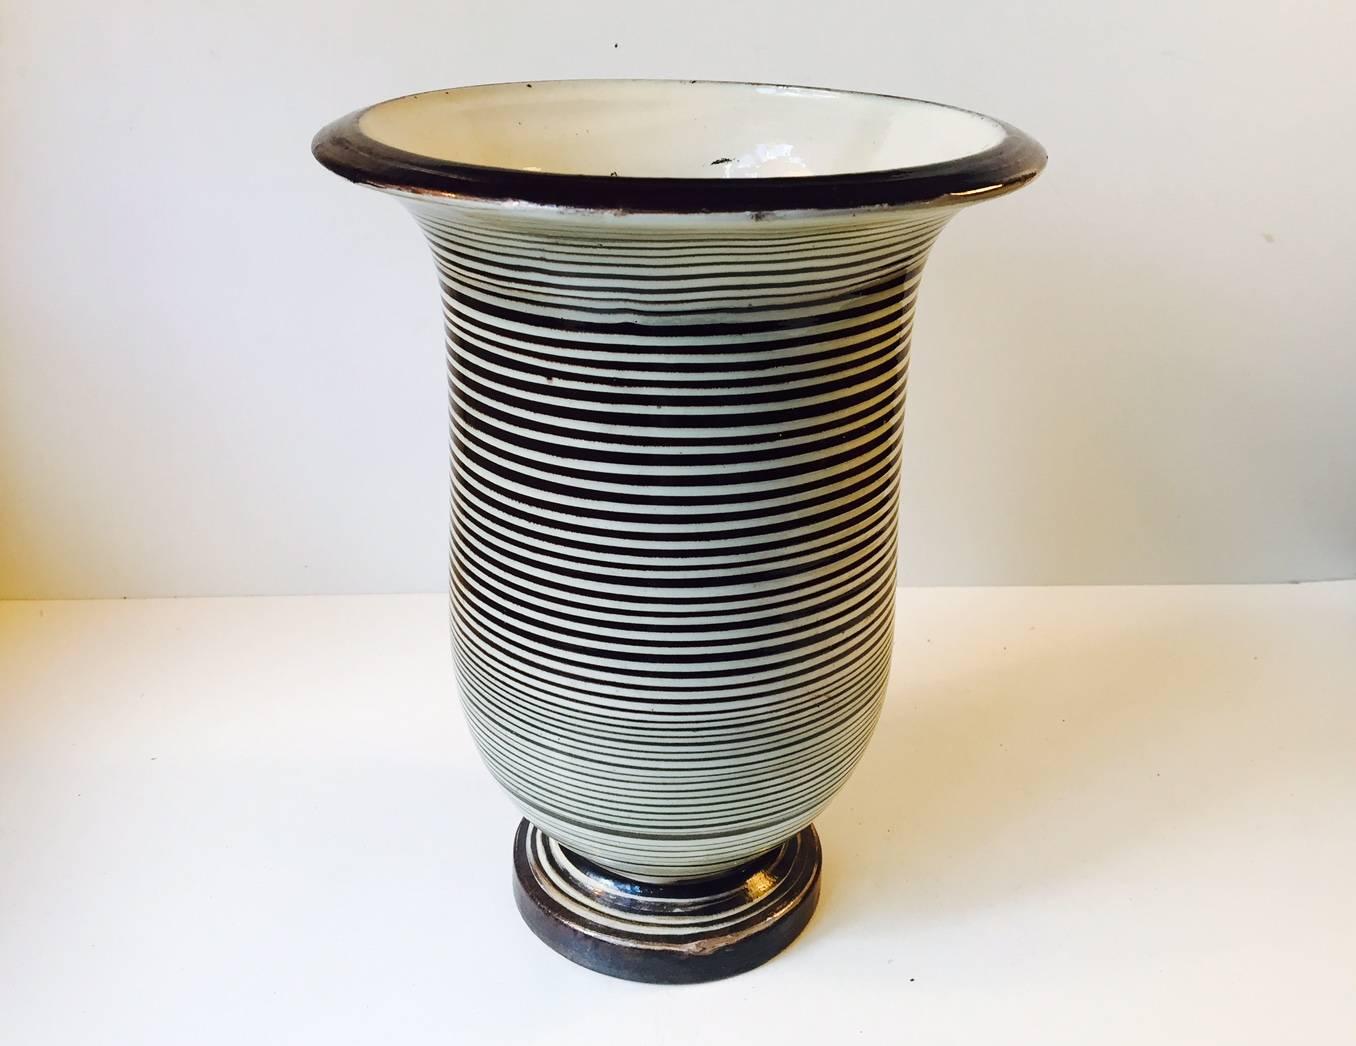 Glazed Danish Striped Ceramic Floor Vase by Herman August KäHler, 1920s